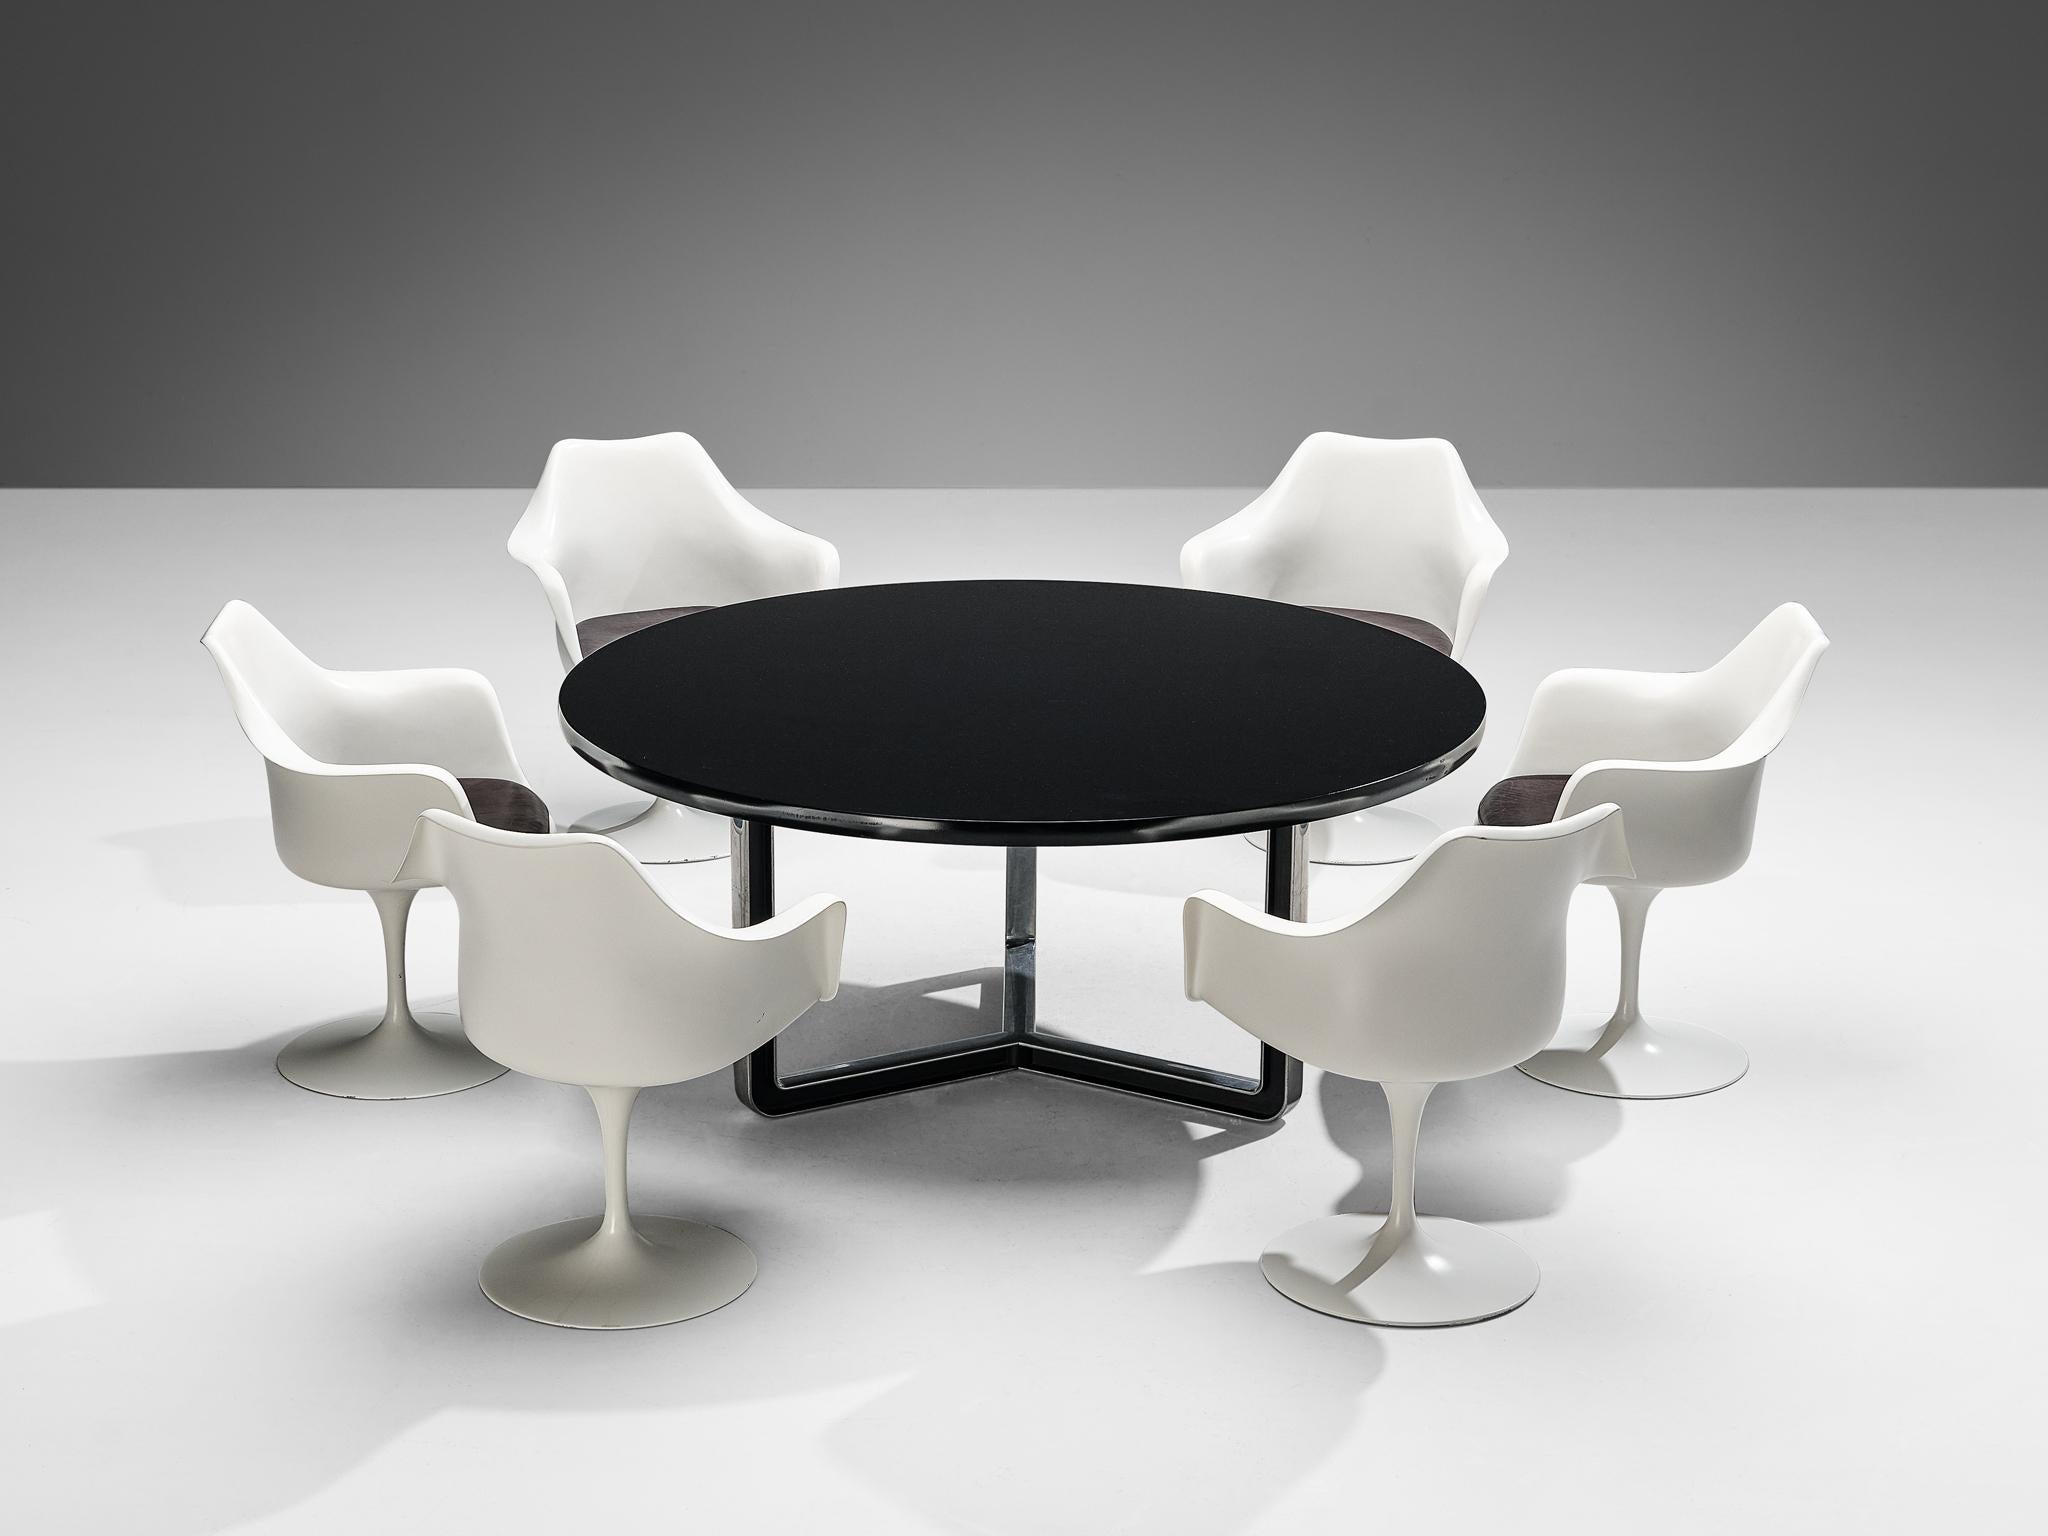 Ensemble de six fauteuils 'Tulip' d'Eero Saarinen pour Knoll avec table de salle à manger ronde de Progetti Tecno


Eero Saarinen pour Knoll, ensemble de six fauteuils 'Tulipe', fibre de verre, aluminium et cuir, États-Unis, design 1955-56,